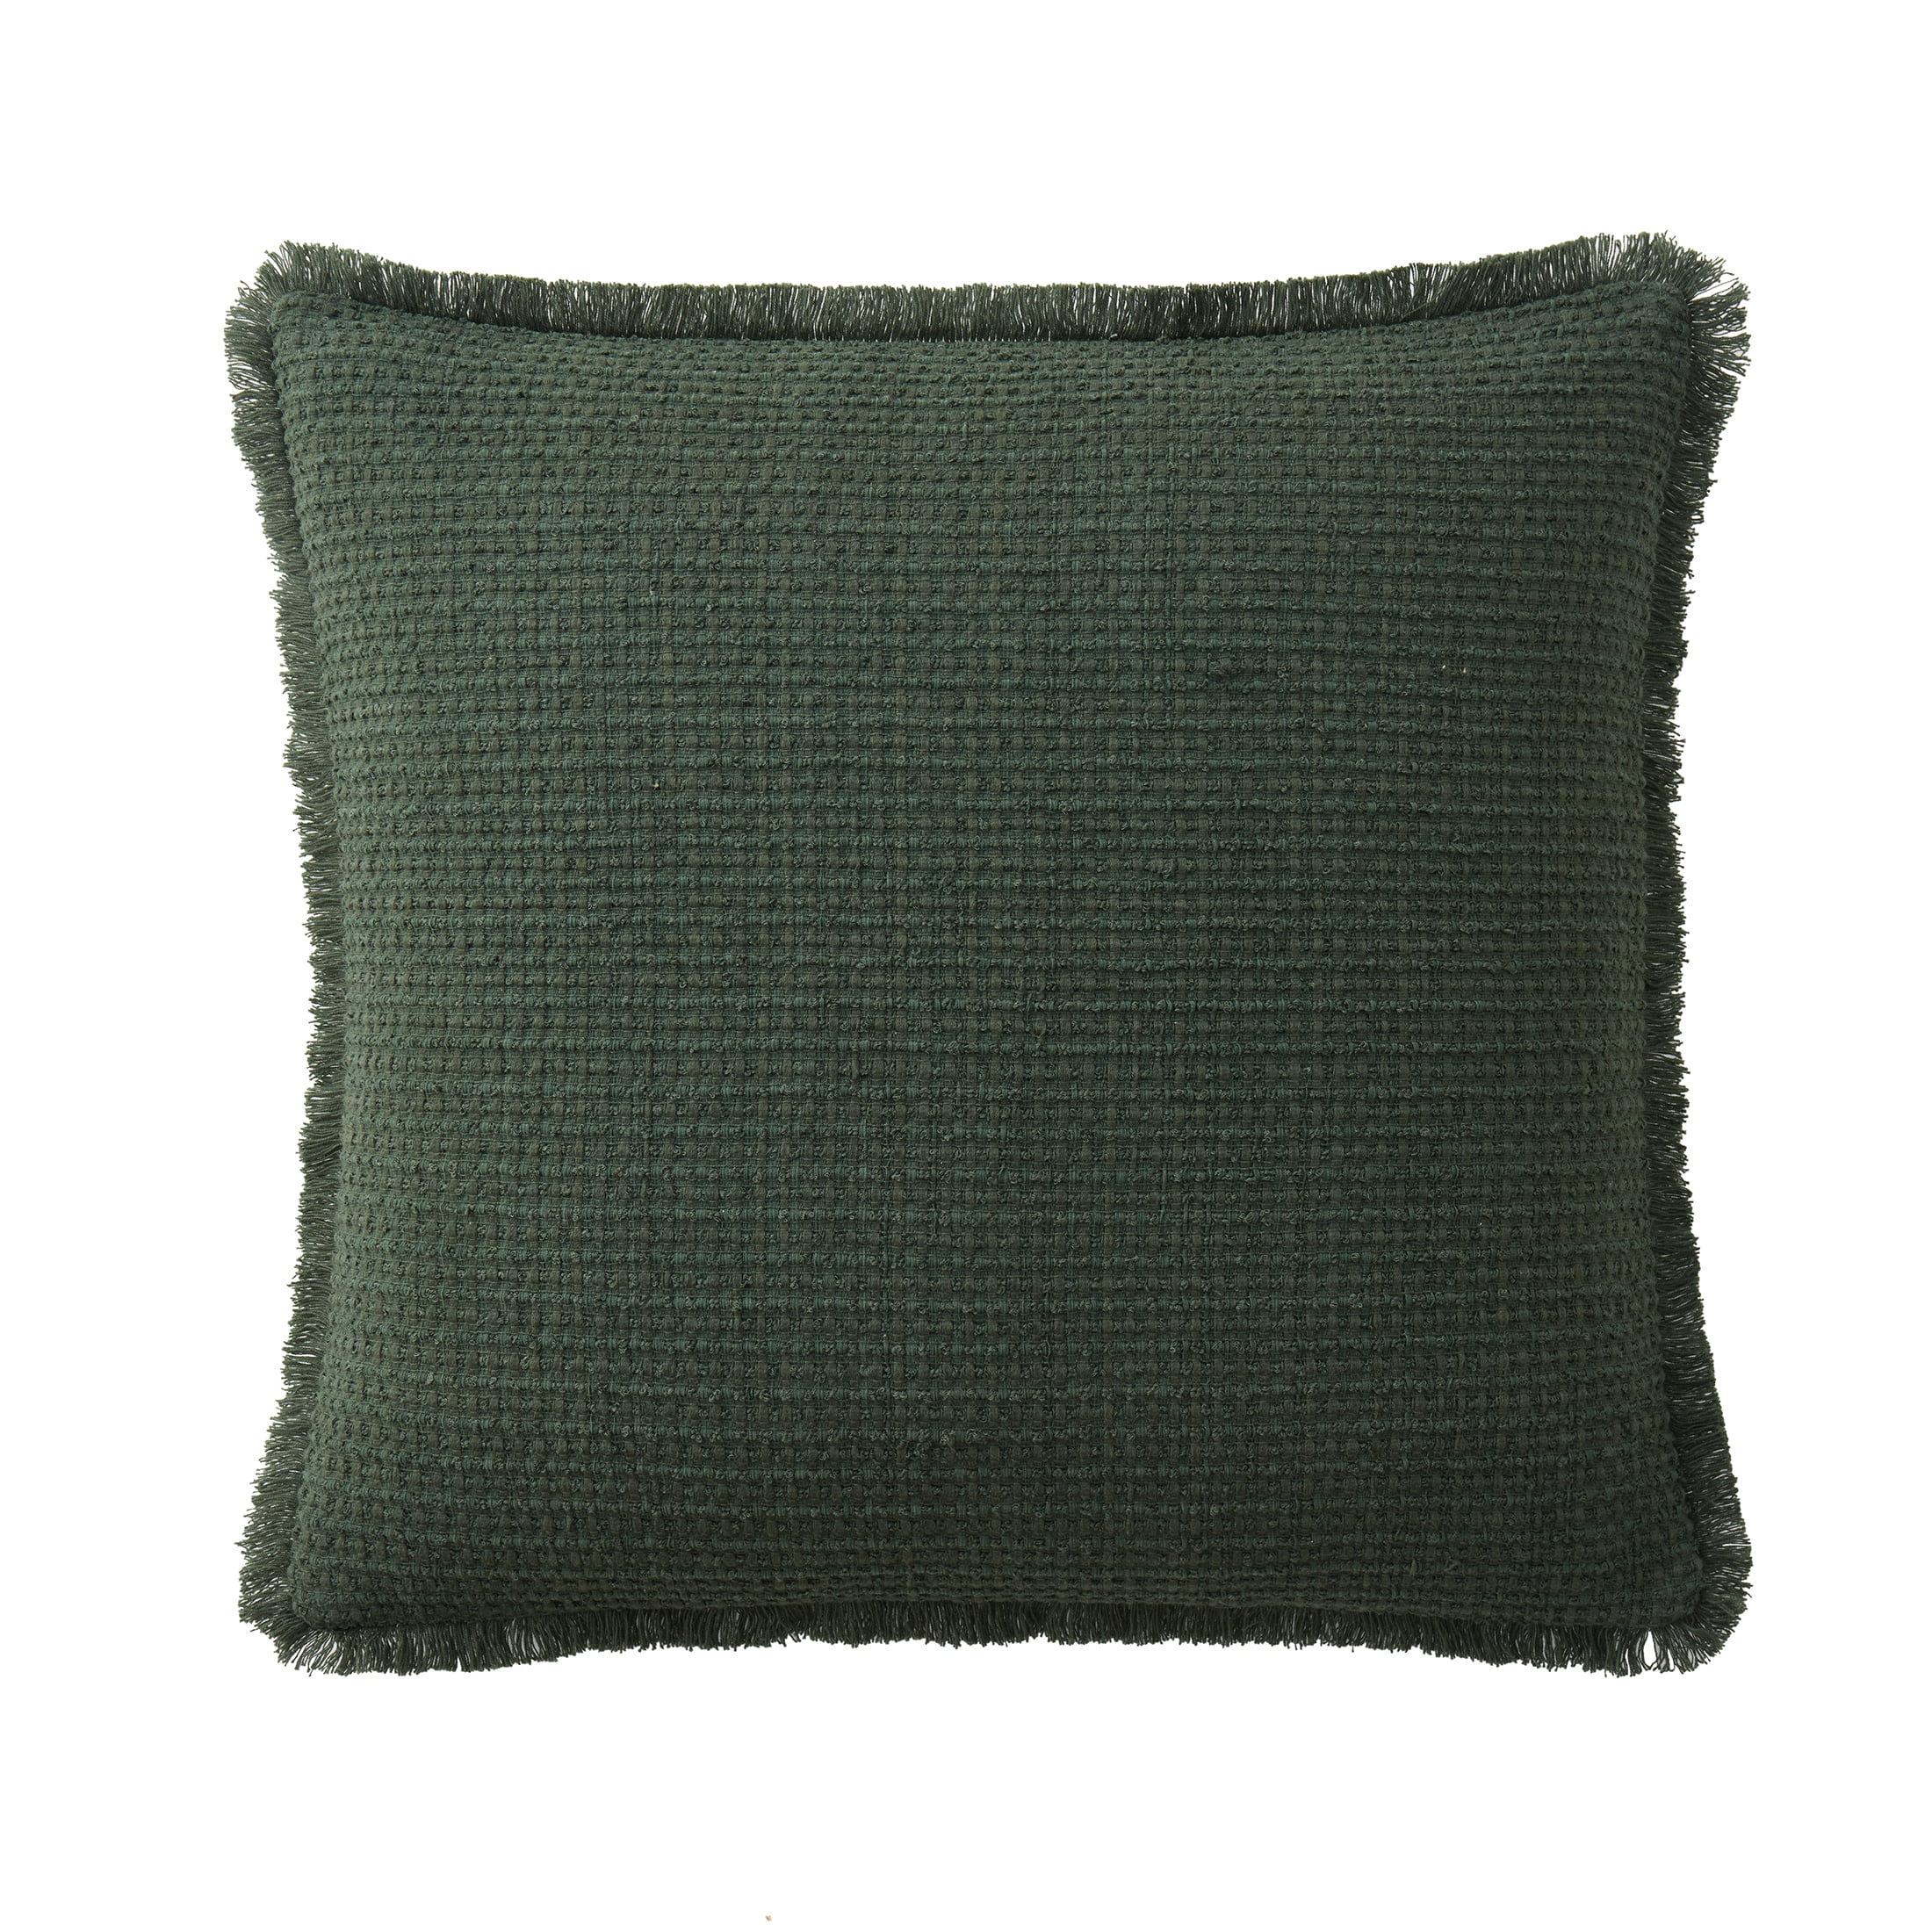 Duck Tape Fringe Pillow: Dress Up Boring Pillows Cheap!